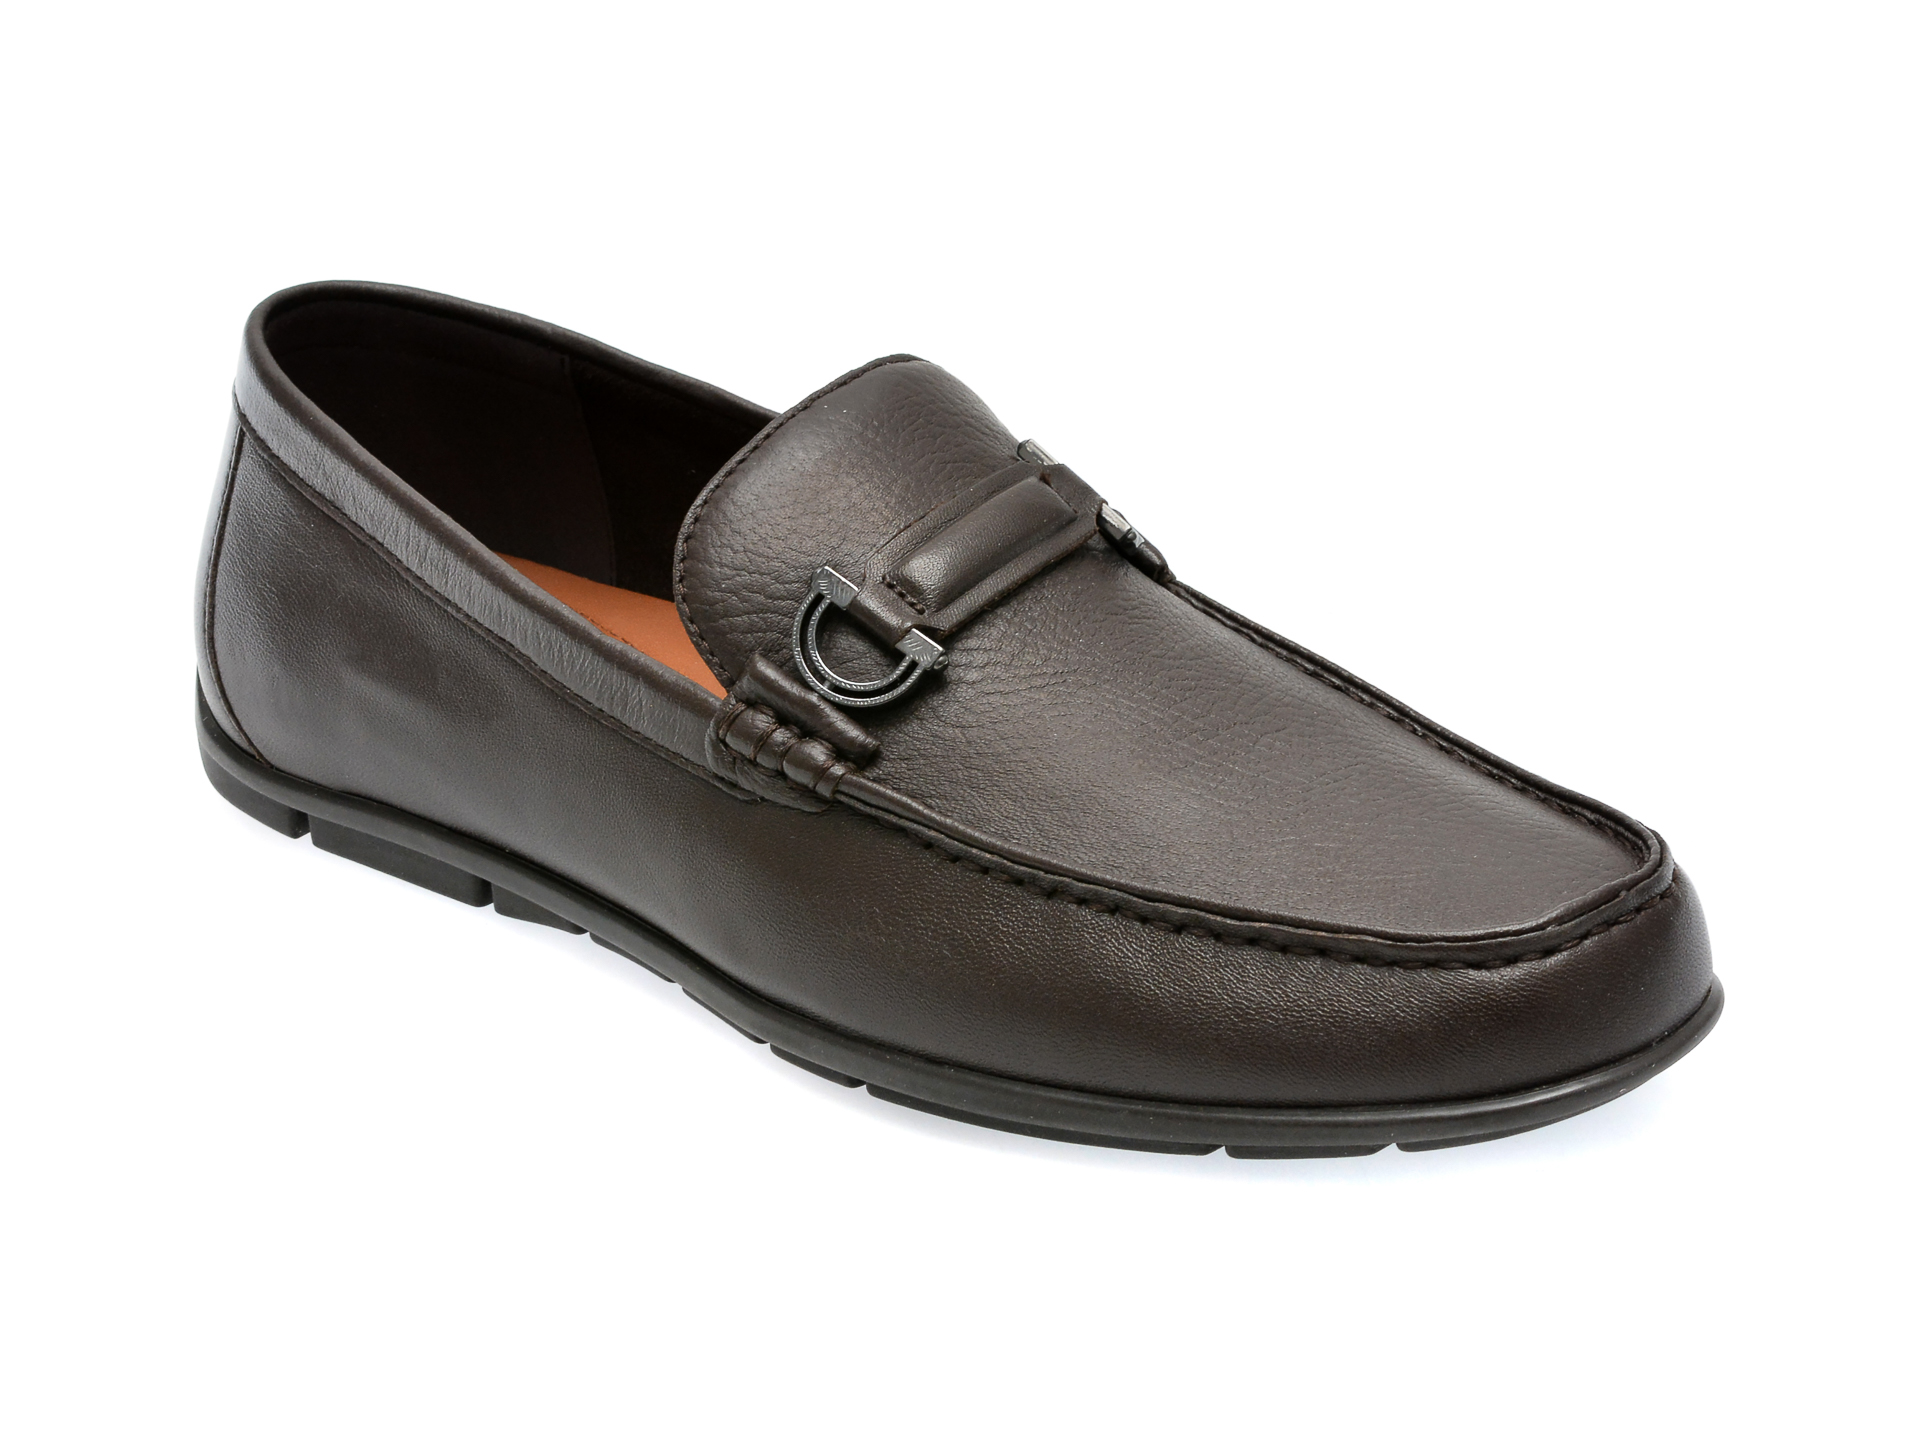 Pantofi ALDO maro, KLAUS201, din piele naturala barbati 2023-09-21